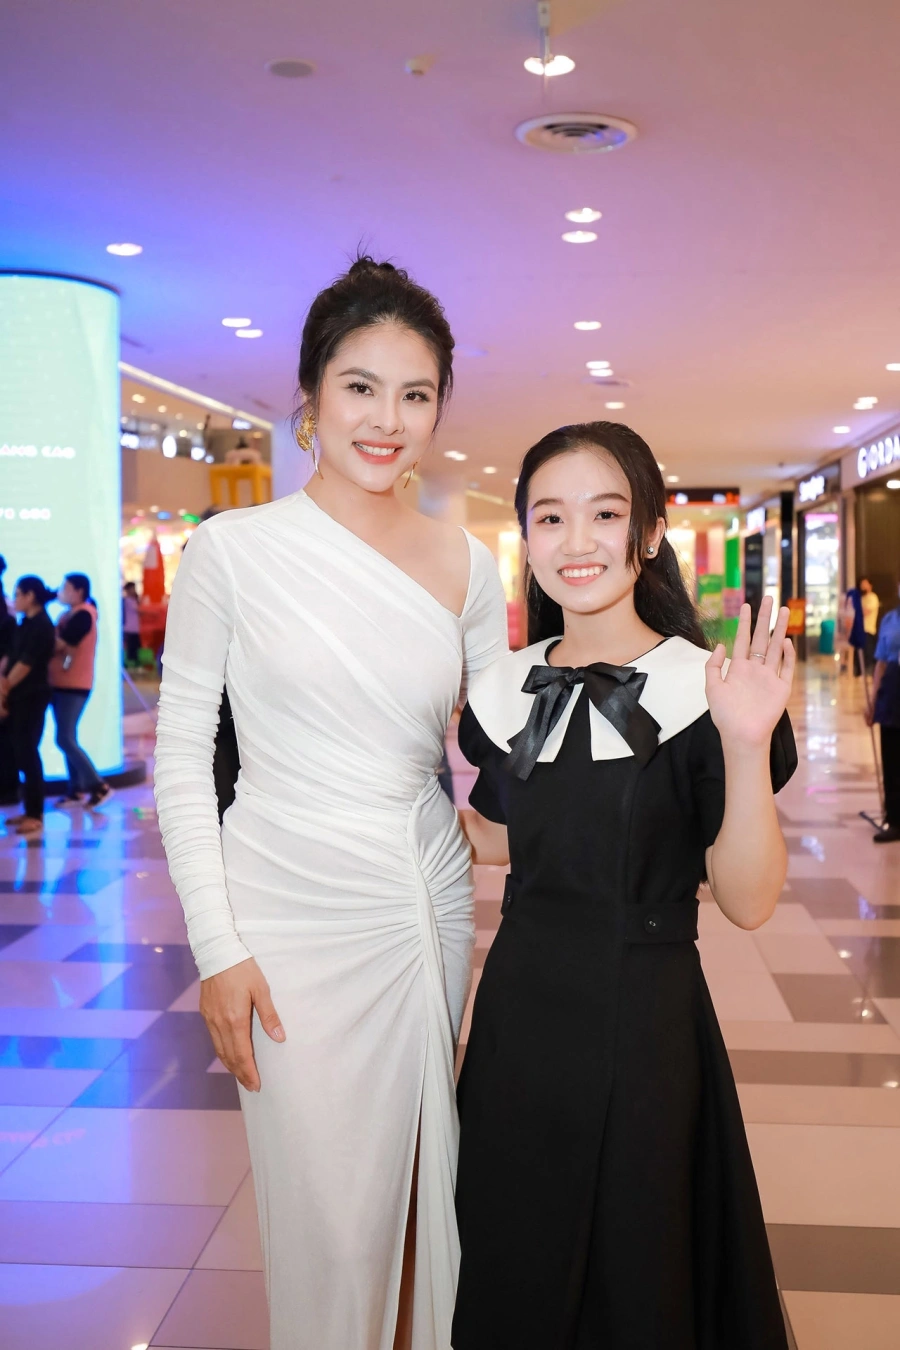 Diễn viên Quang Anh hội ngộ mẫu nhí Minh Thư cùng dàn sao đổ bộ thảm đỏ ra mắt phim 'Kẻ Ẩn Danh'